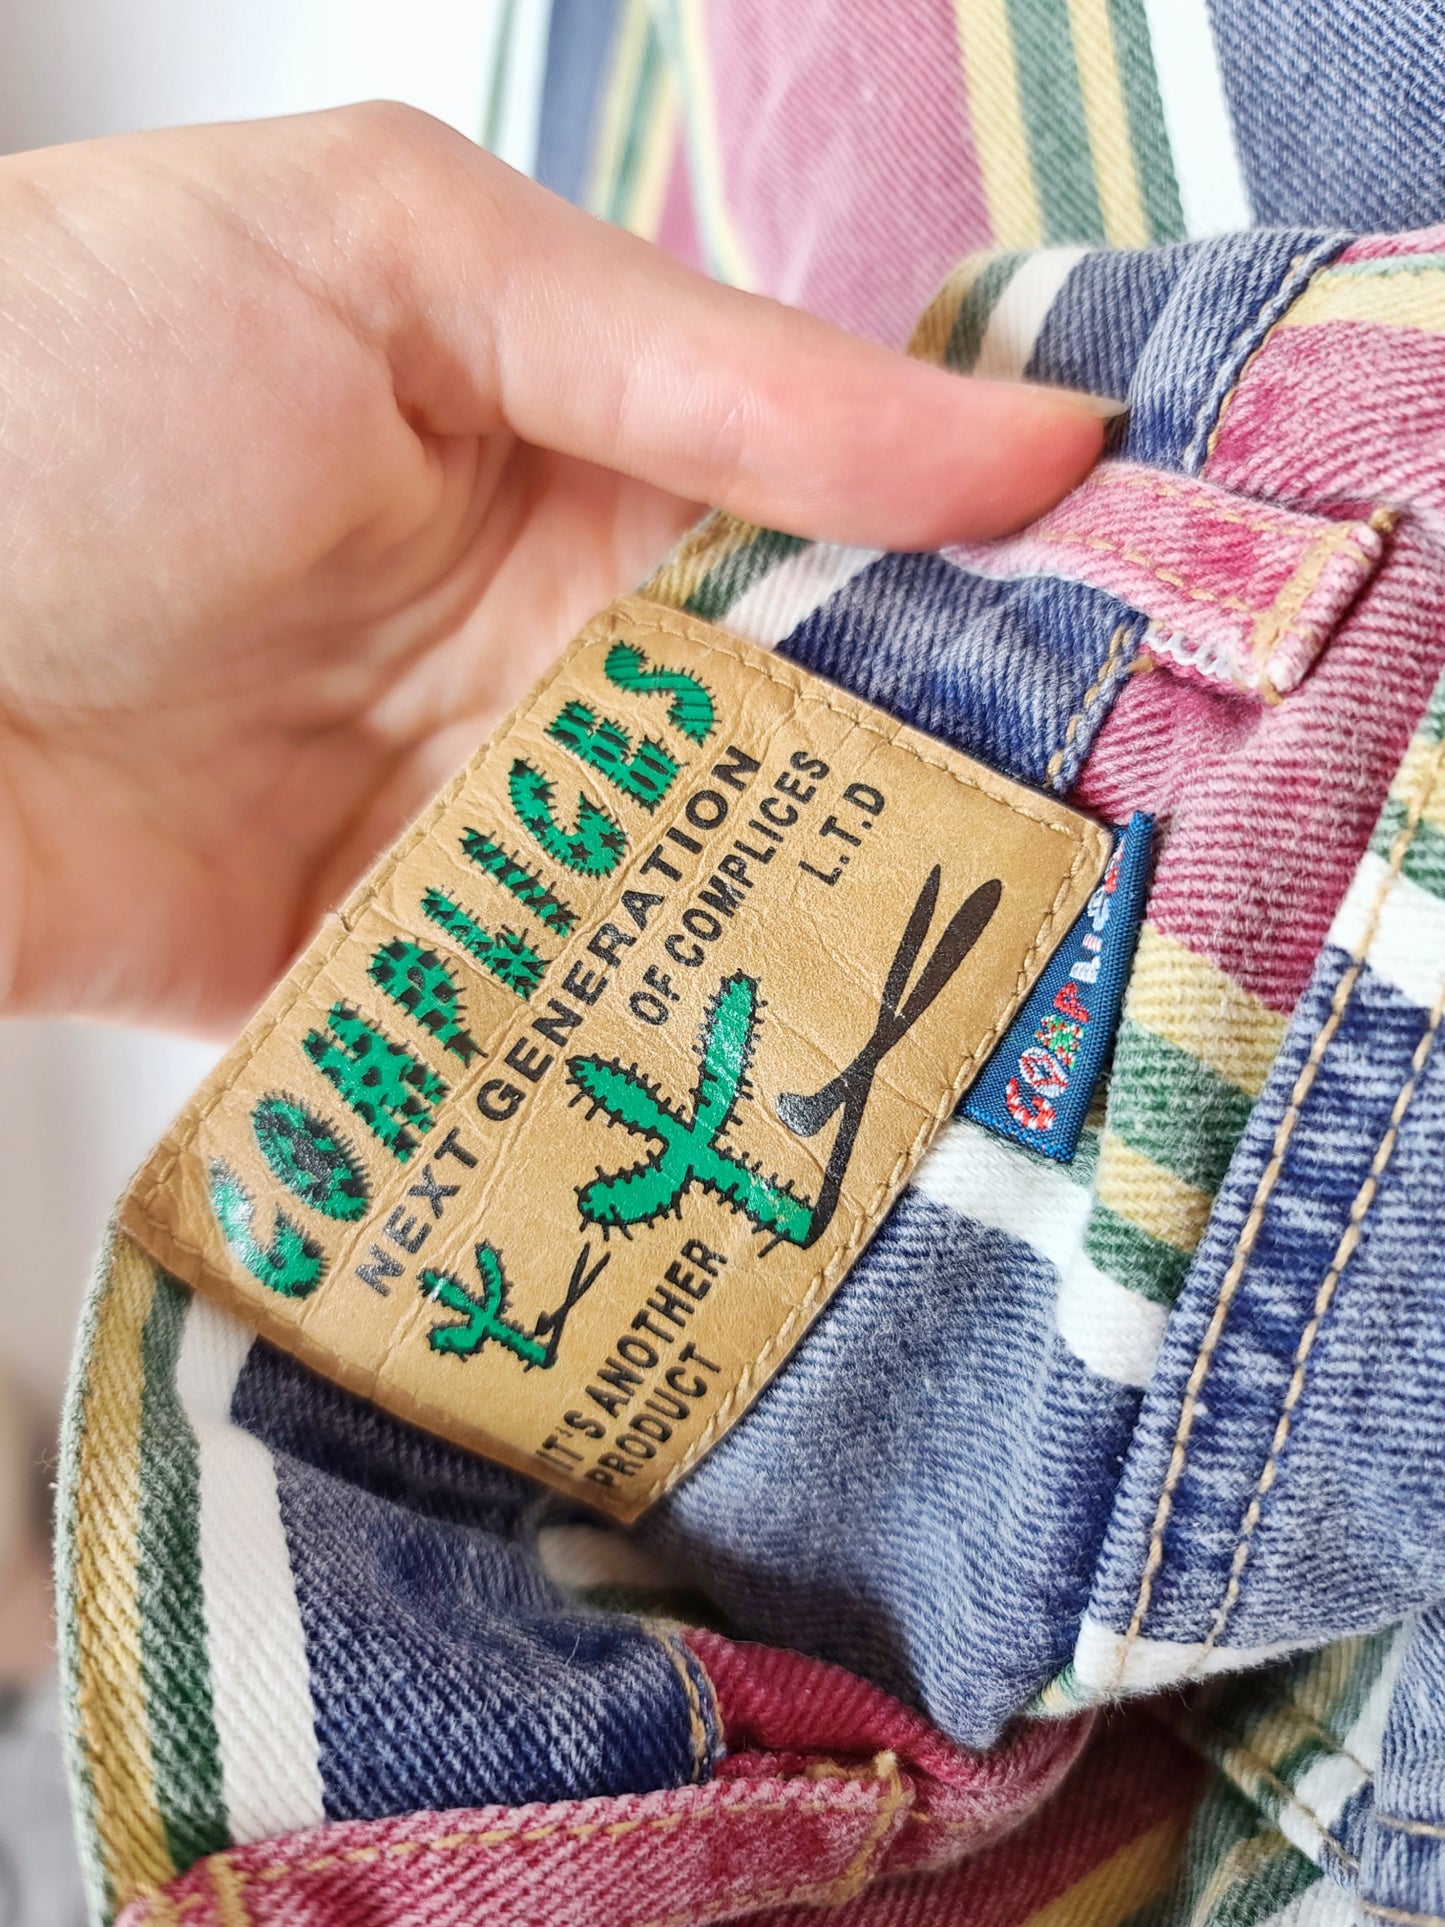 Pantalon vintage coloré - zimfriperie